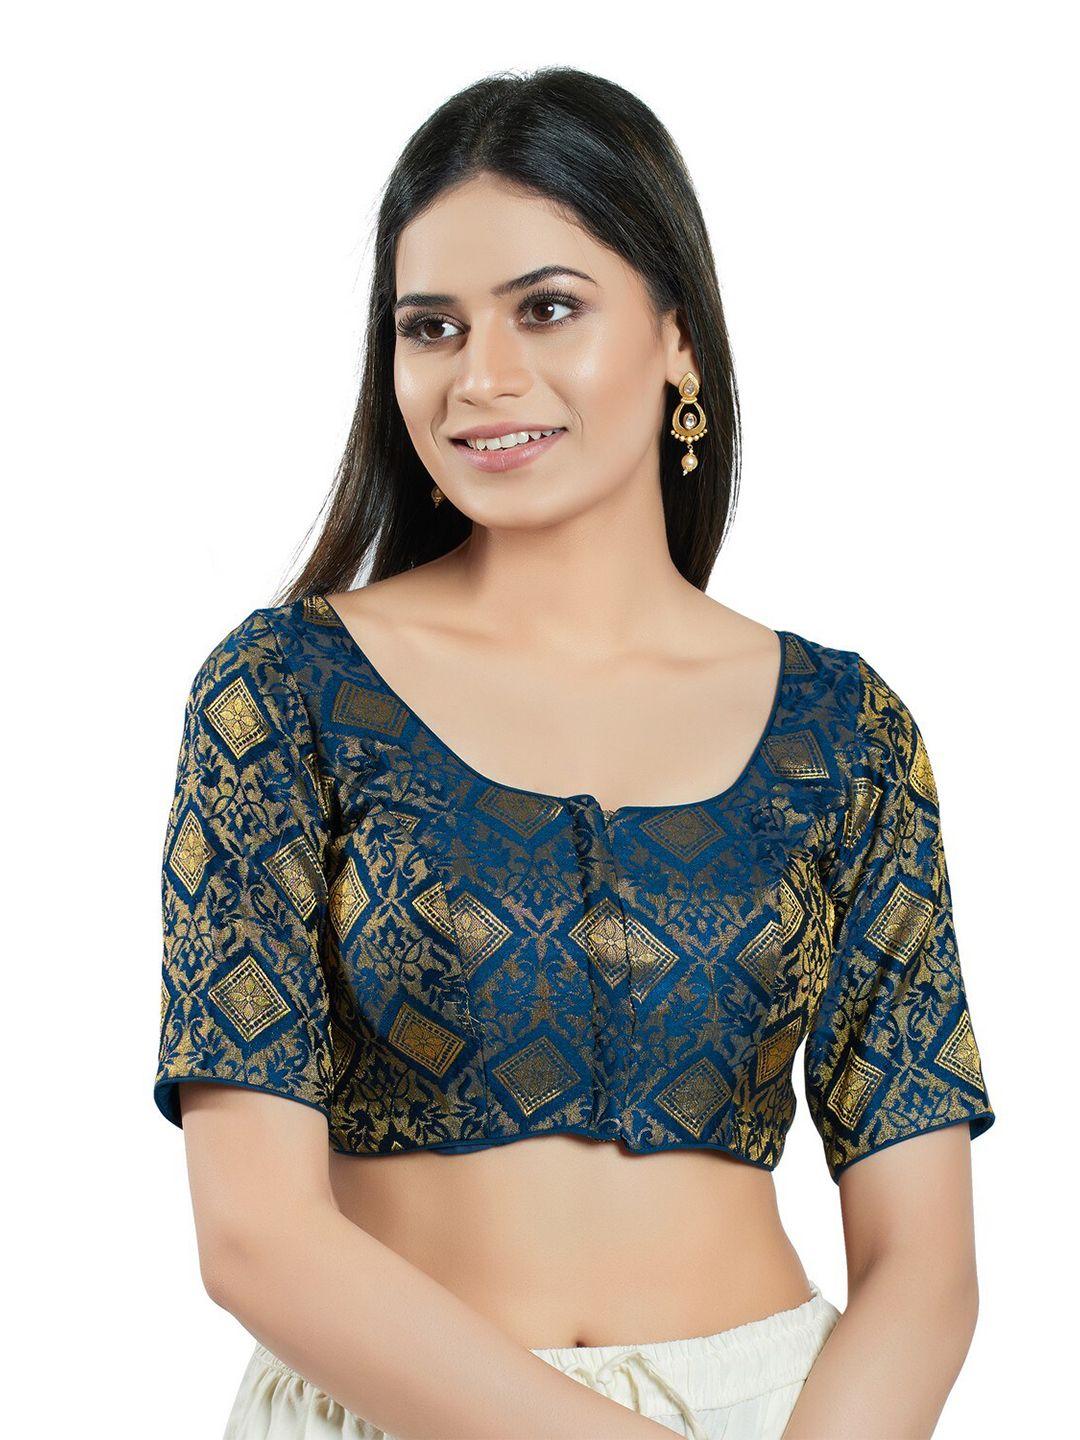 salwar studio woven design brocade saree blouse